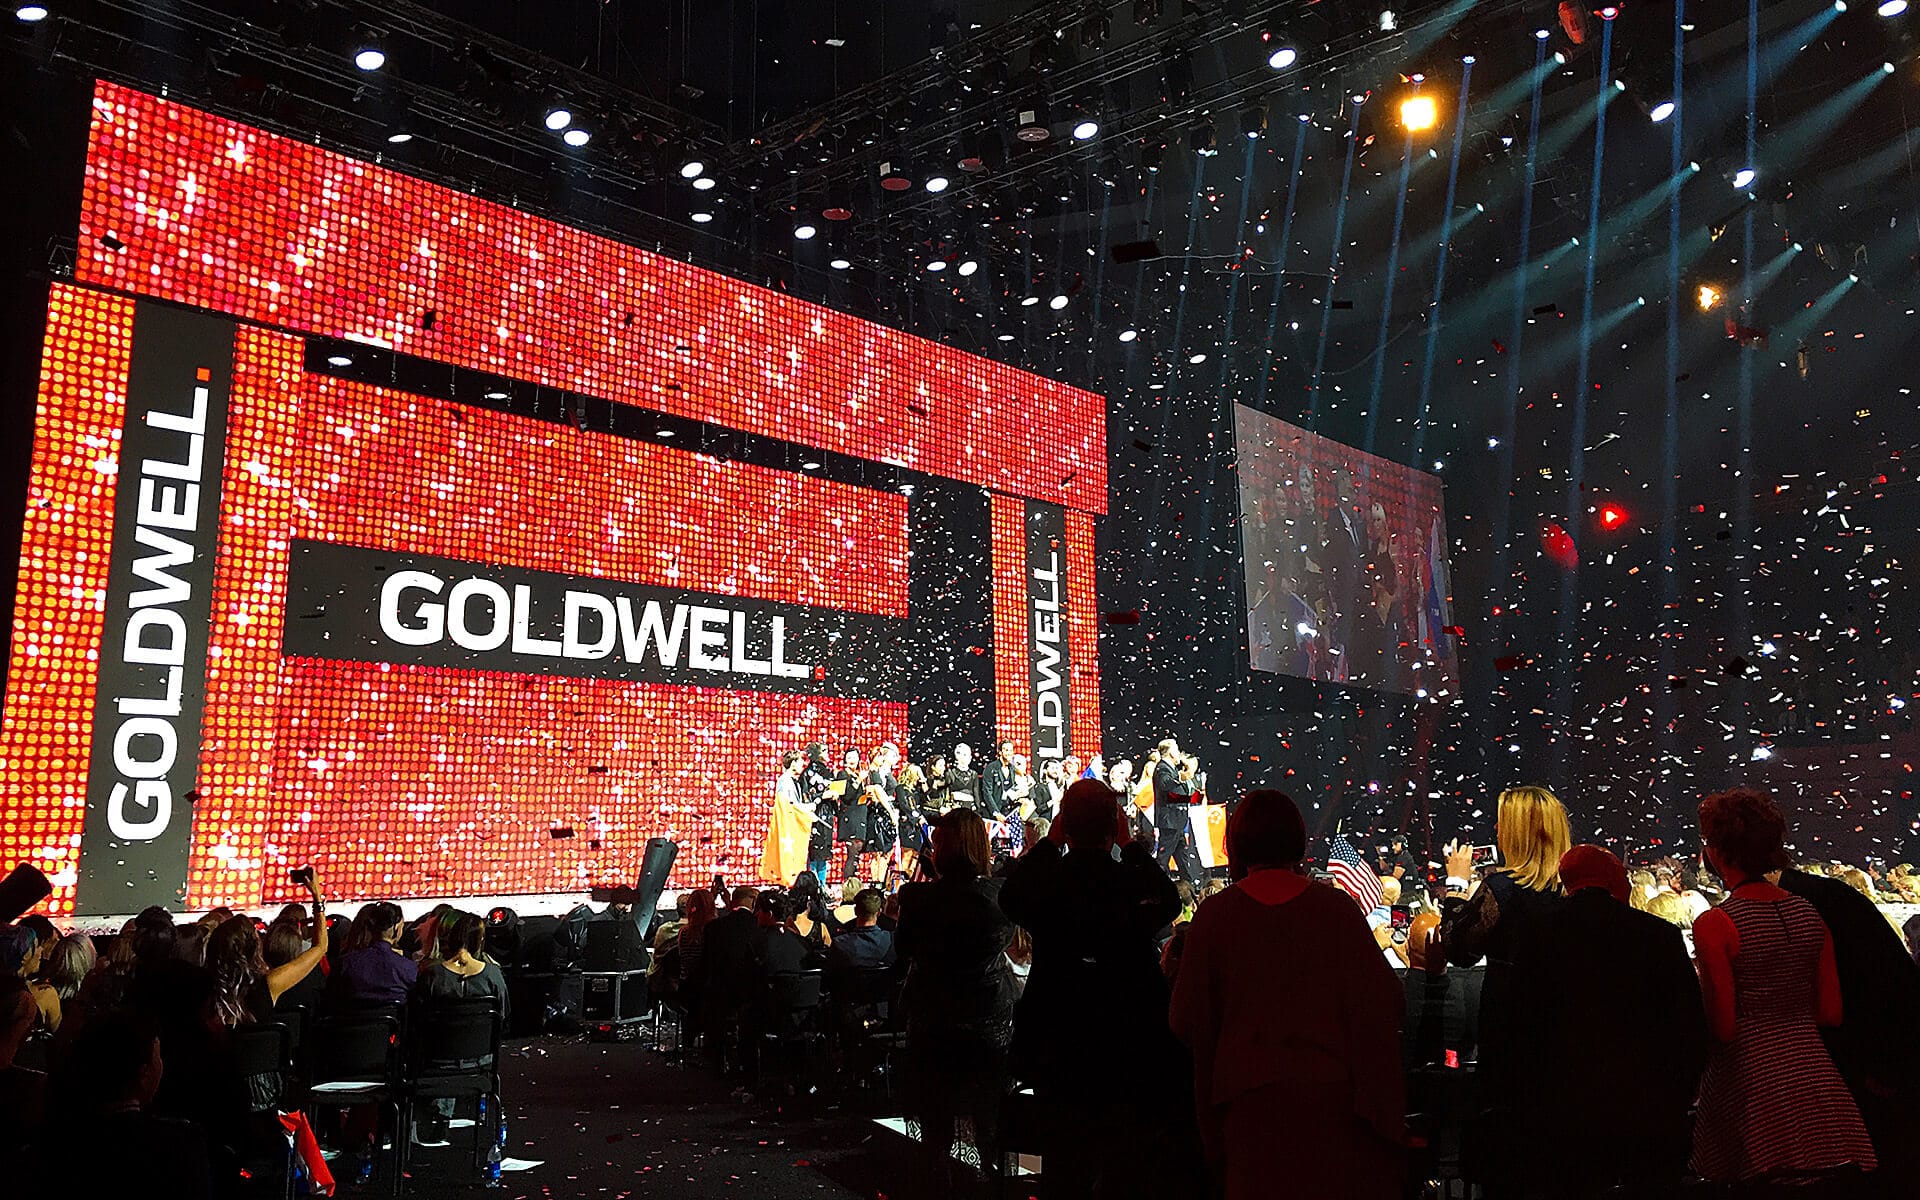 Stora LED-skärmar på scenen till Goldwell Global Zoom i Globen / Avicii Arena